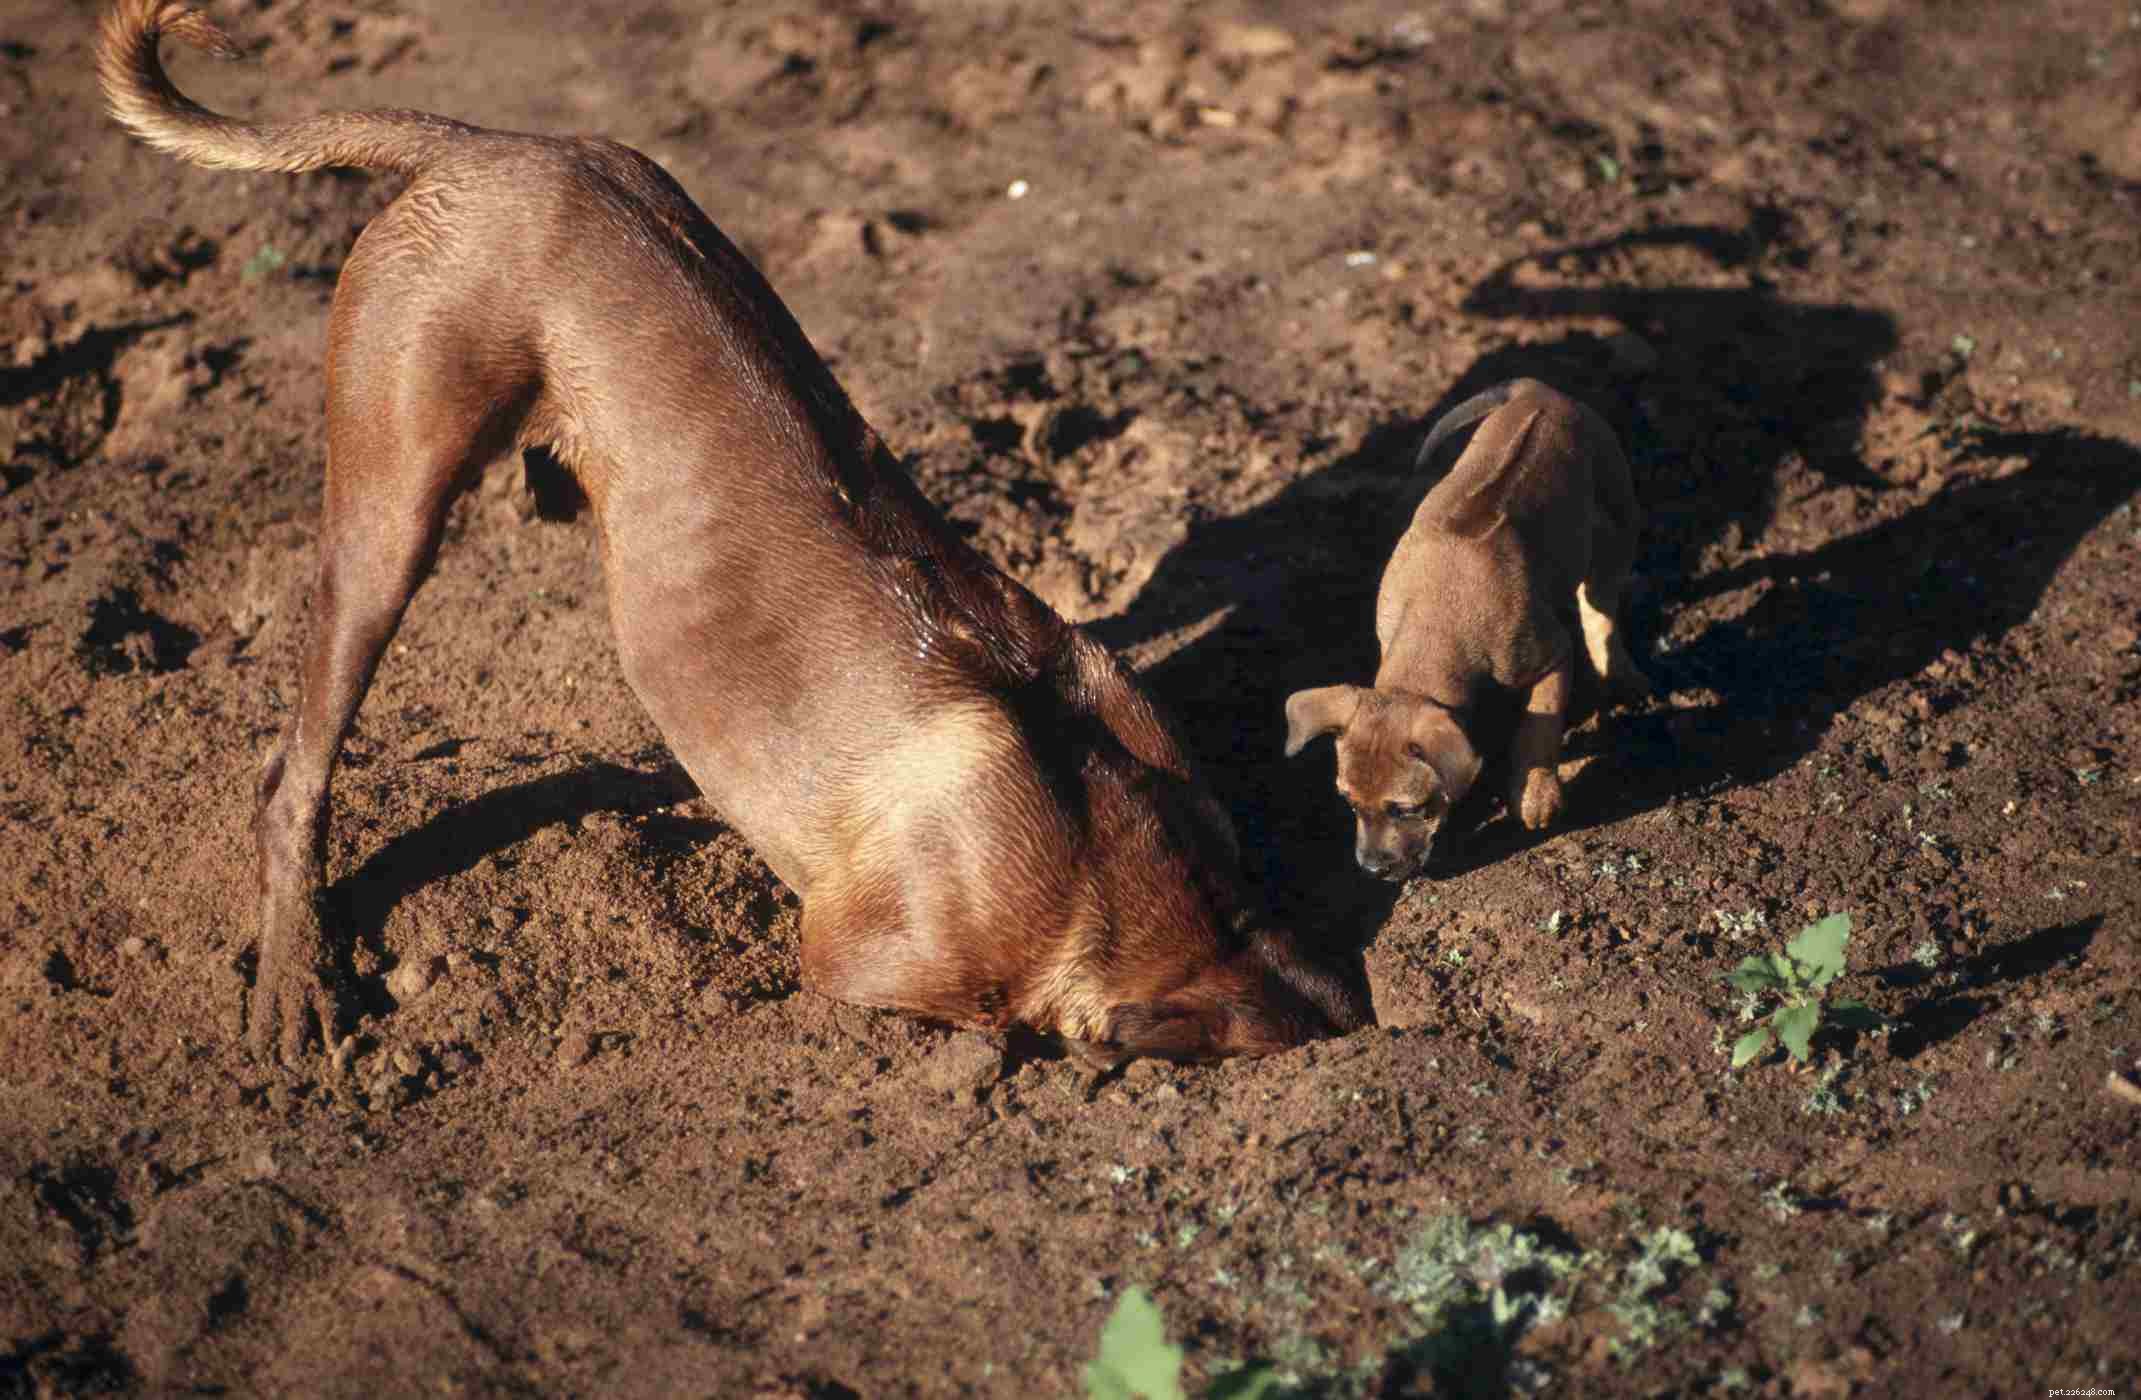 Rhodesian Ridgeback :caractéristiques et soins de la race de chien